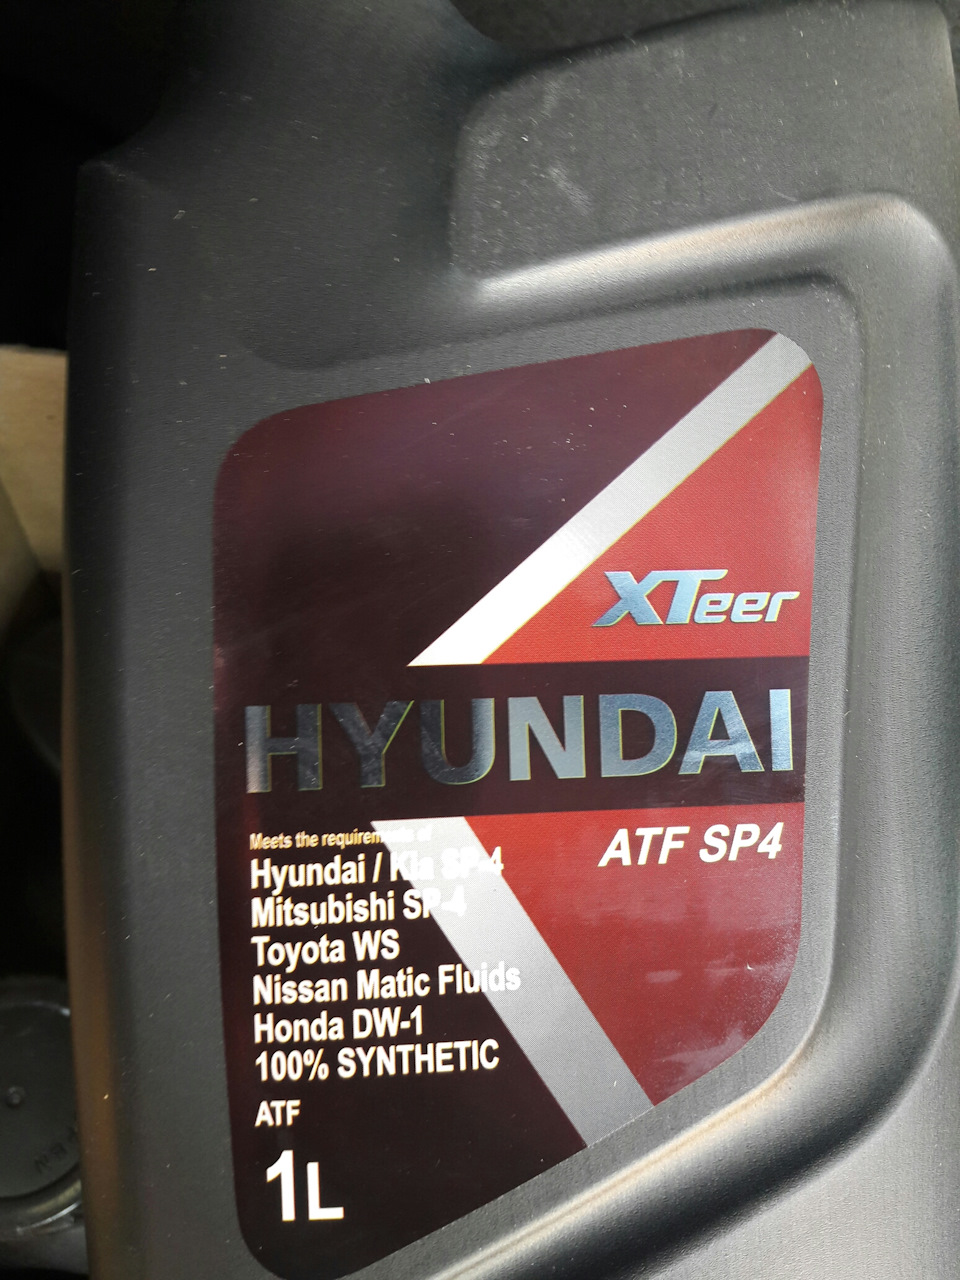 Трансмиссионное масло hyundai xteer. Hyundai XTEER ATF sp4. Моторное масло Хендай Икс тир 5 в 30. ATF sp4 RR 8 Speed Hyundai XTEER. Hyundai XTEER logo.